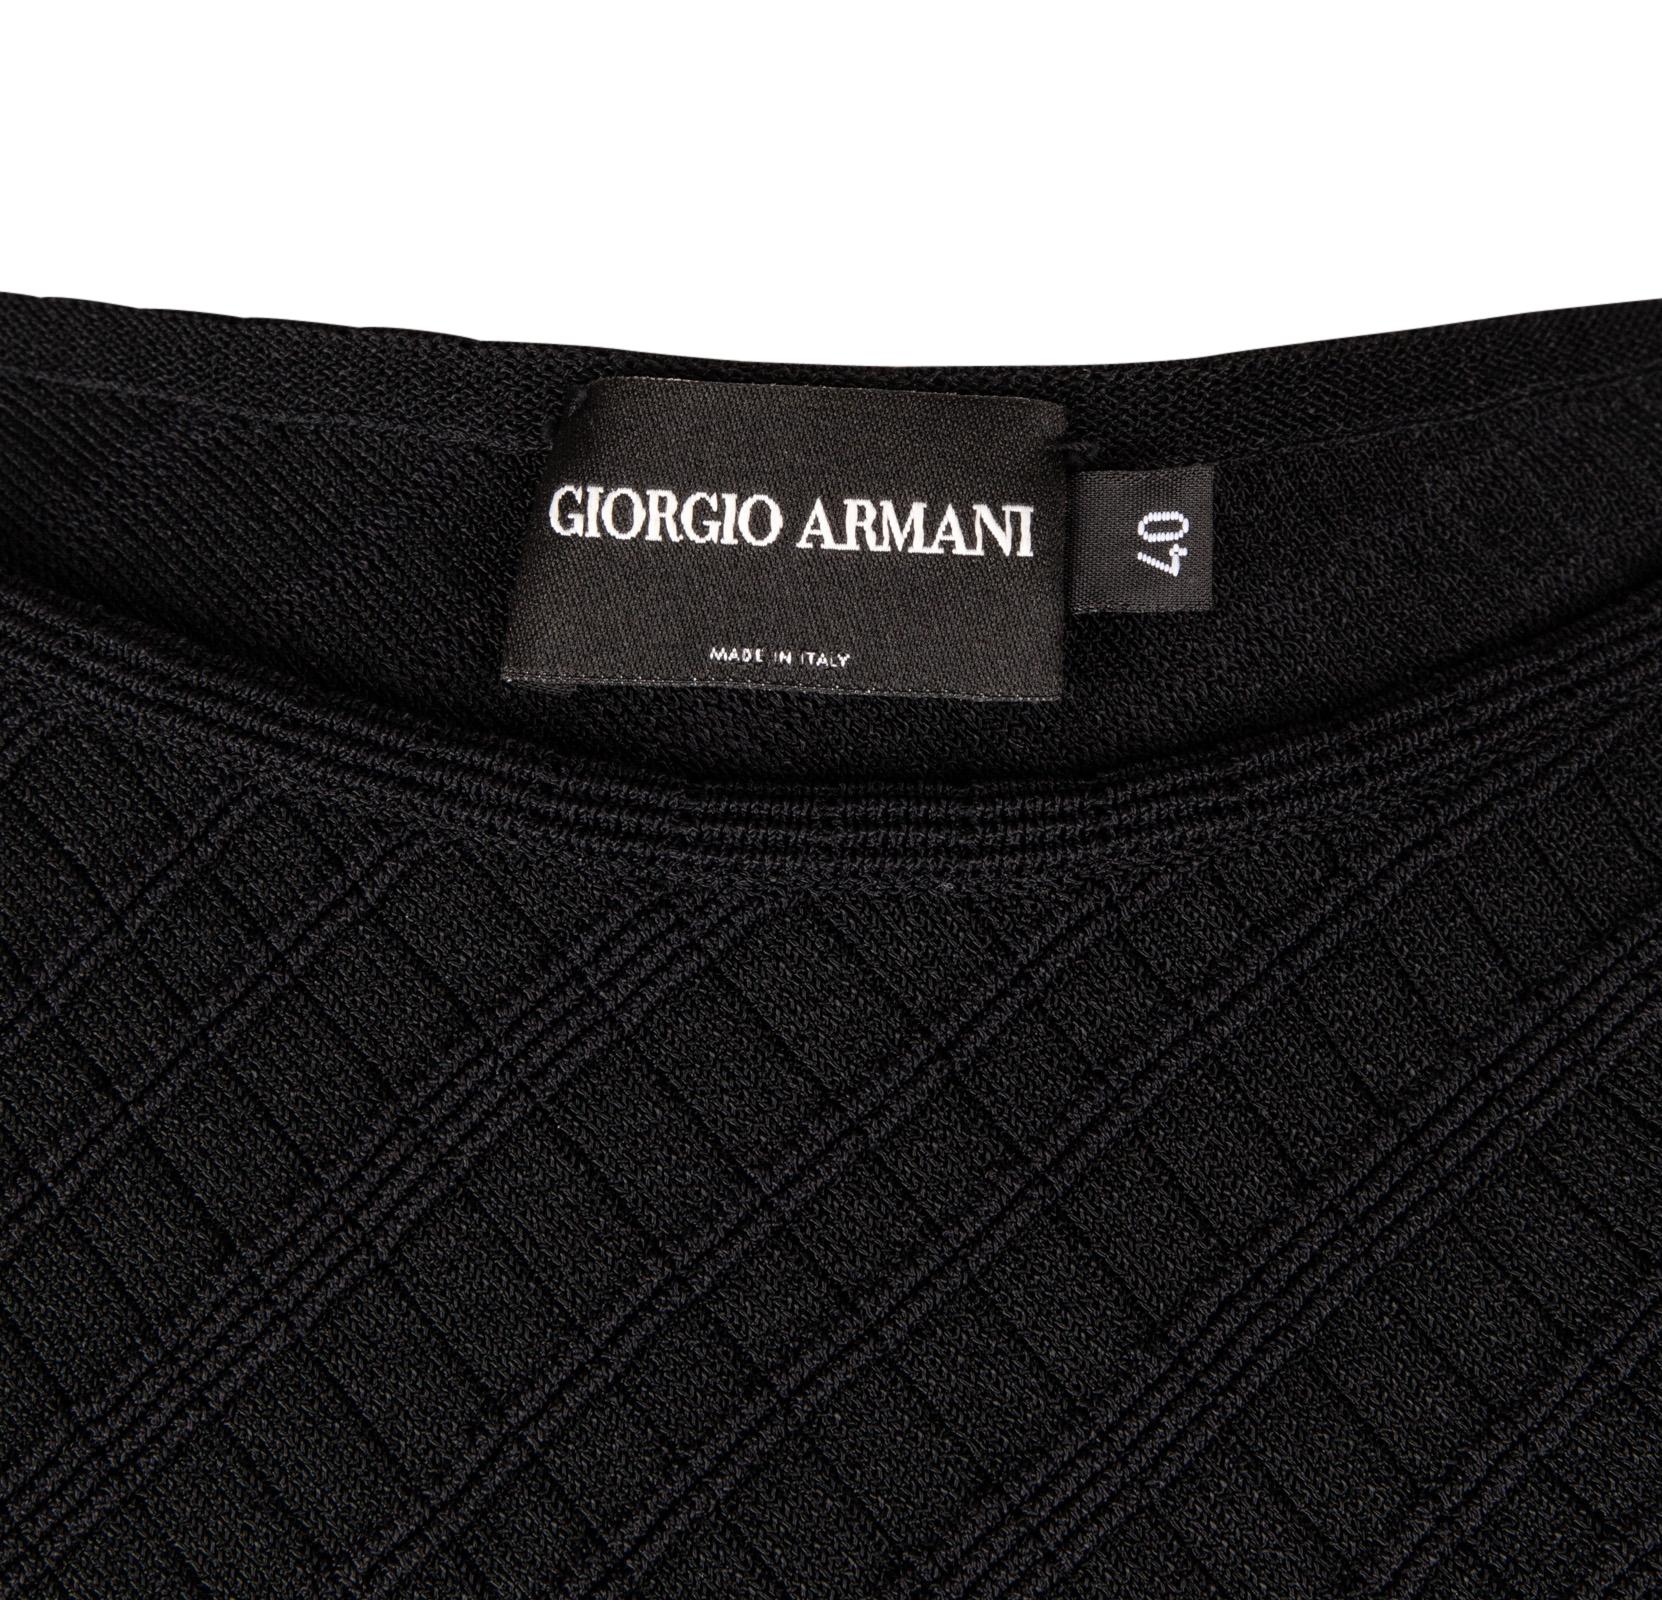 Giorgio Armani Top Black Textured Fabric Classic  40 / 6 For Sale 3